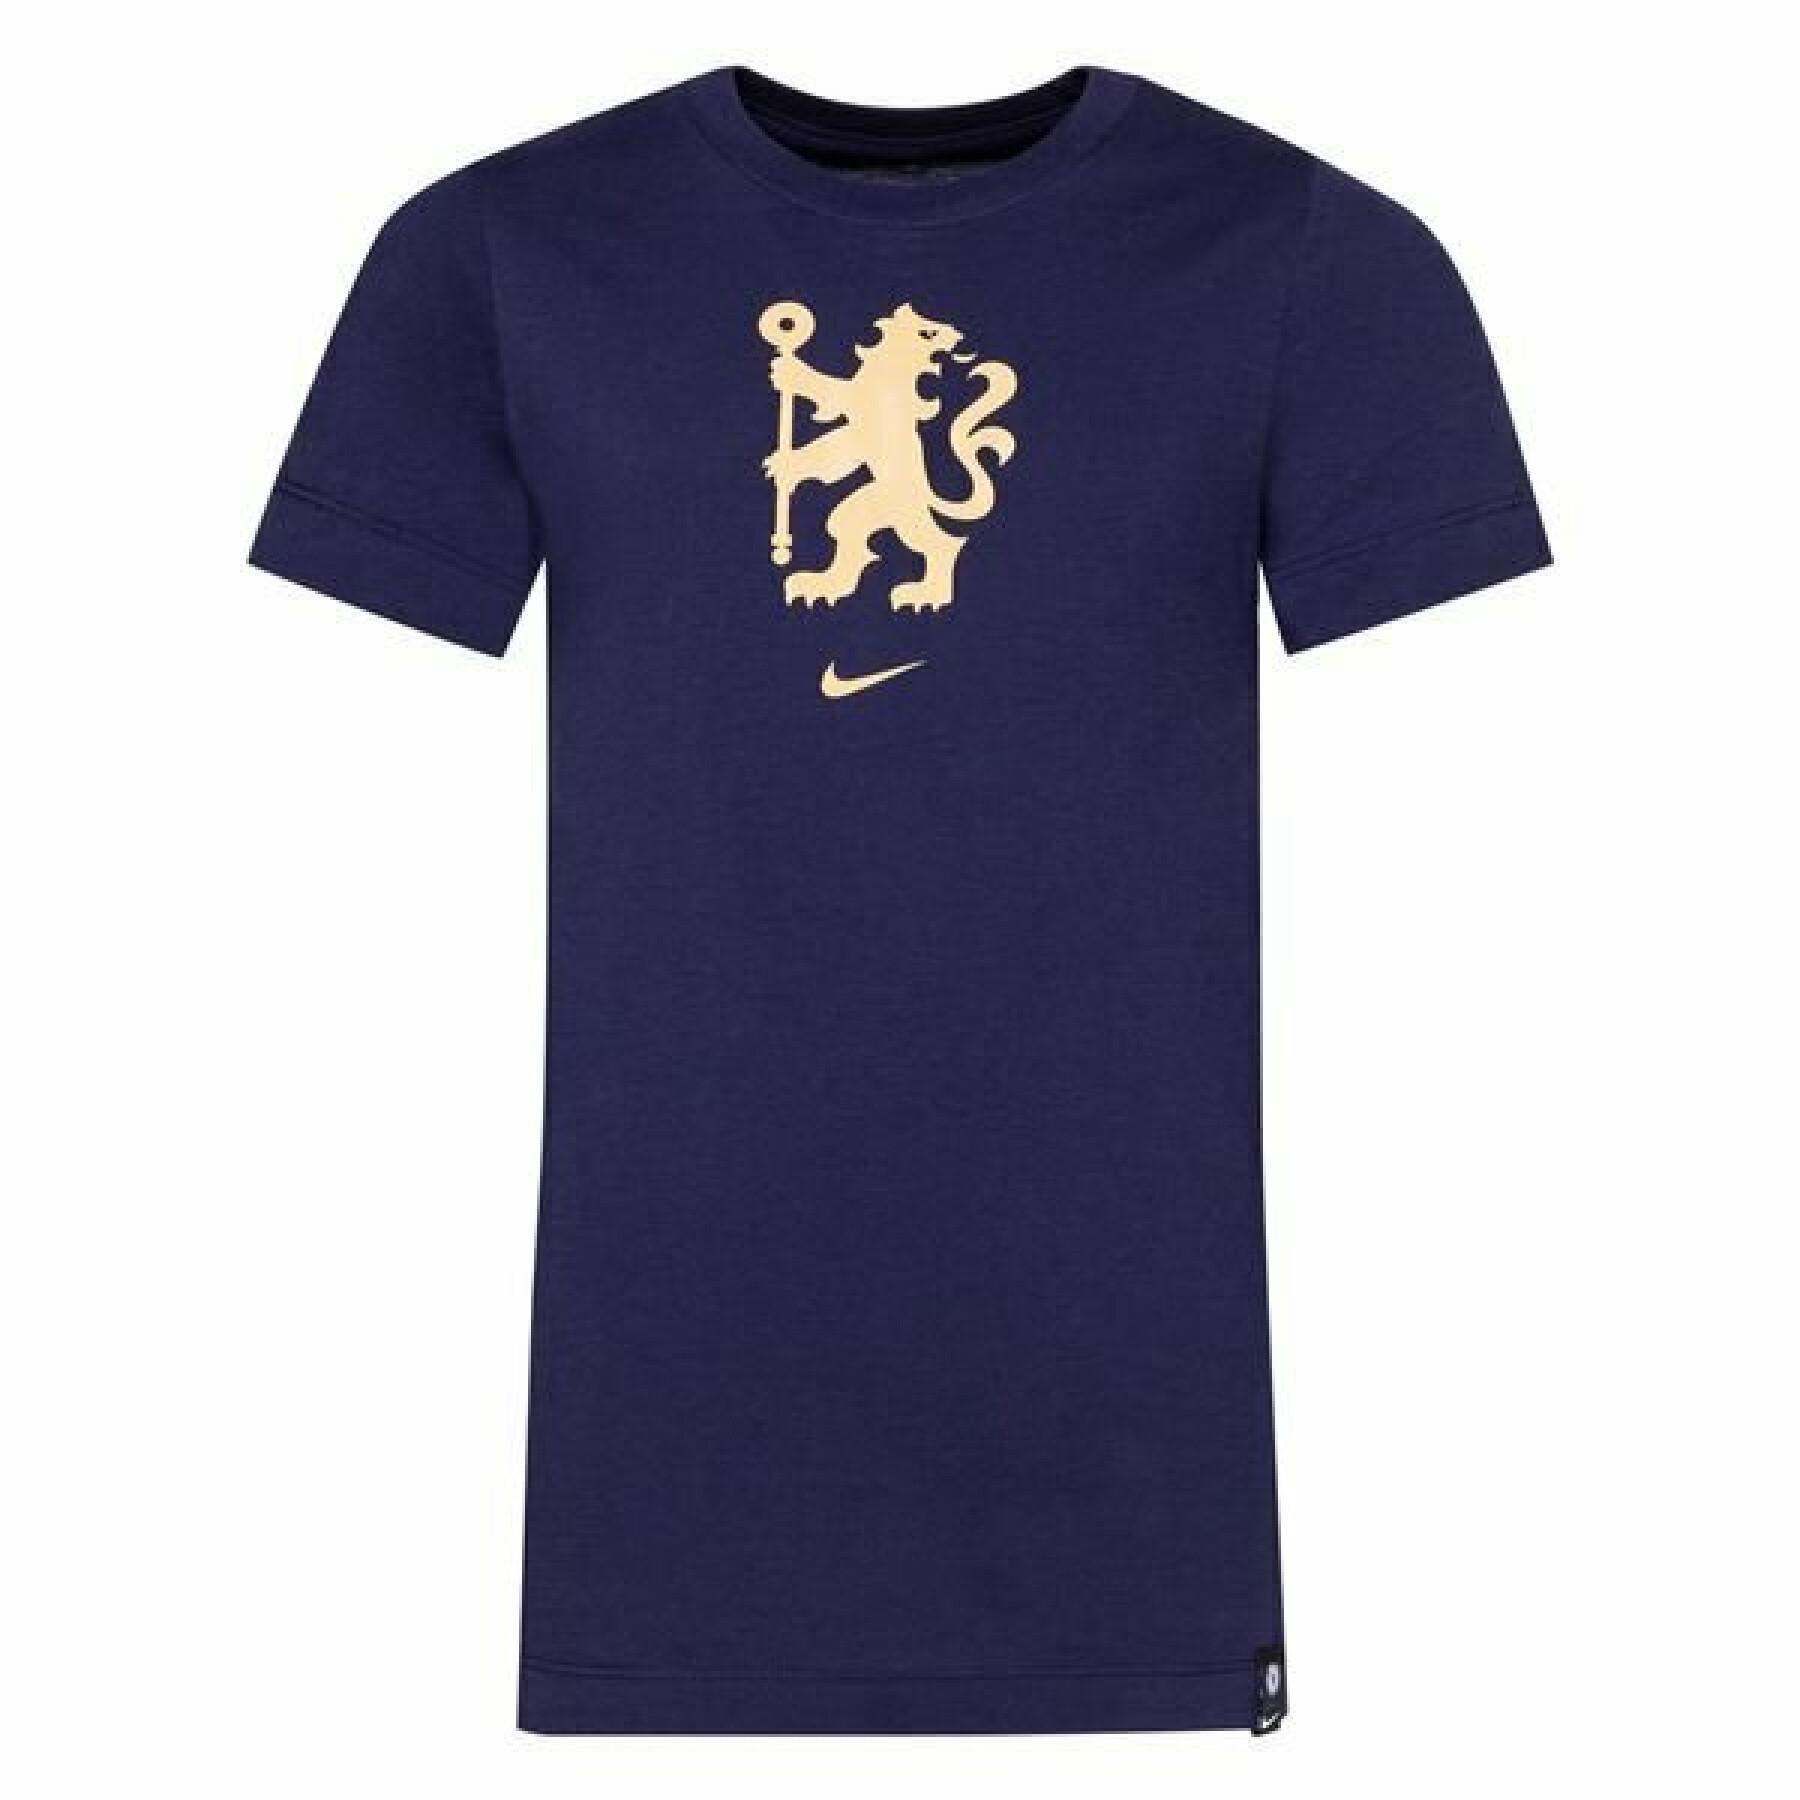 Kinder-T-shirt Chelsea 2021/22